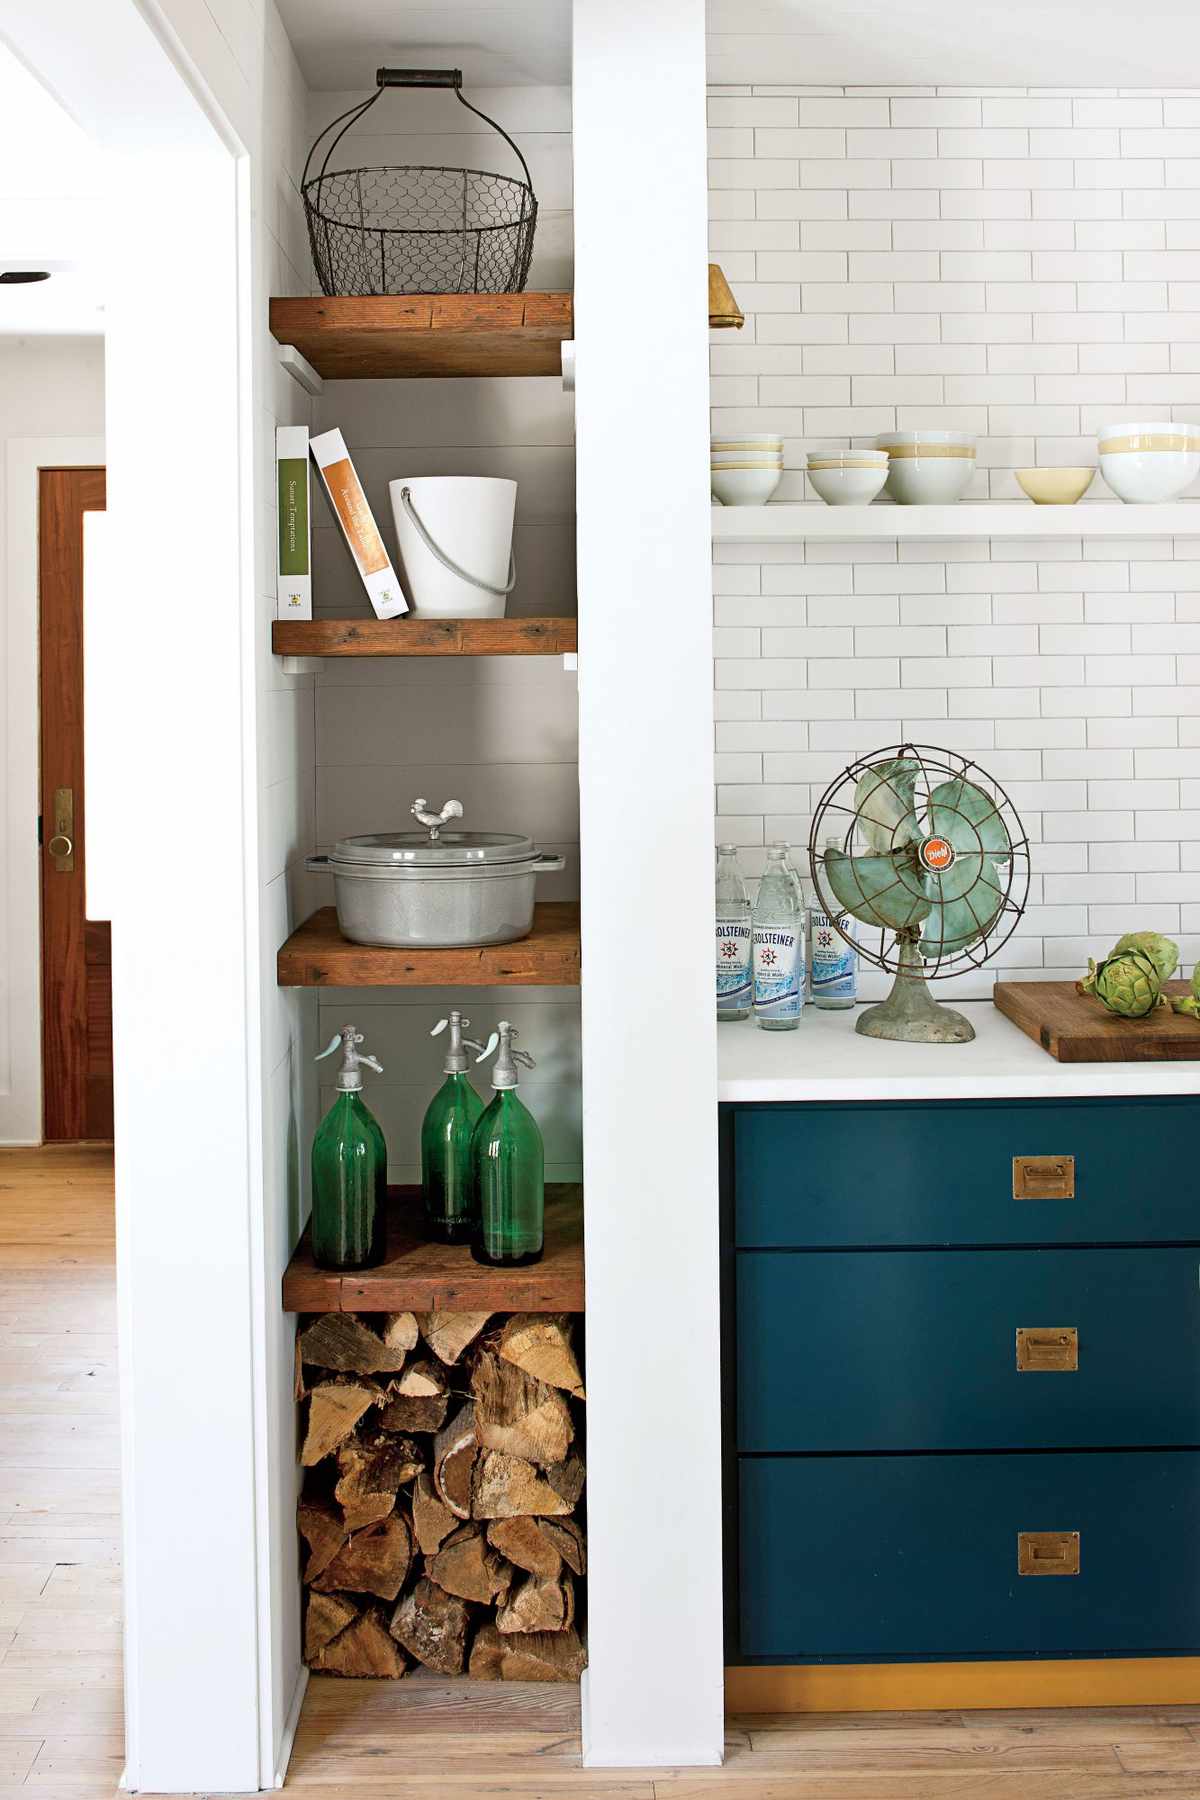 Kitchen: Stylish Storage